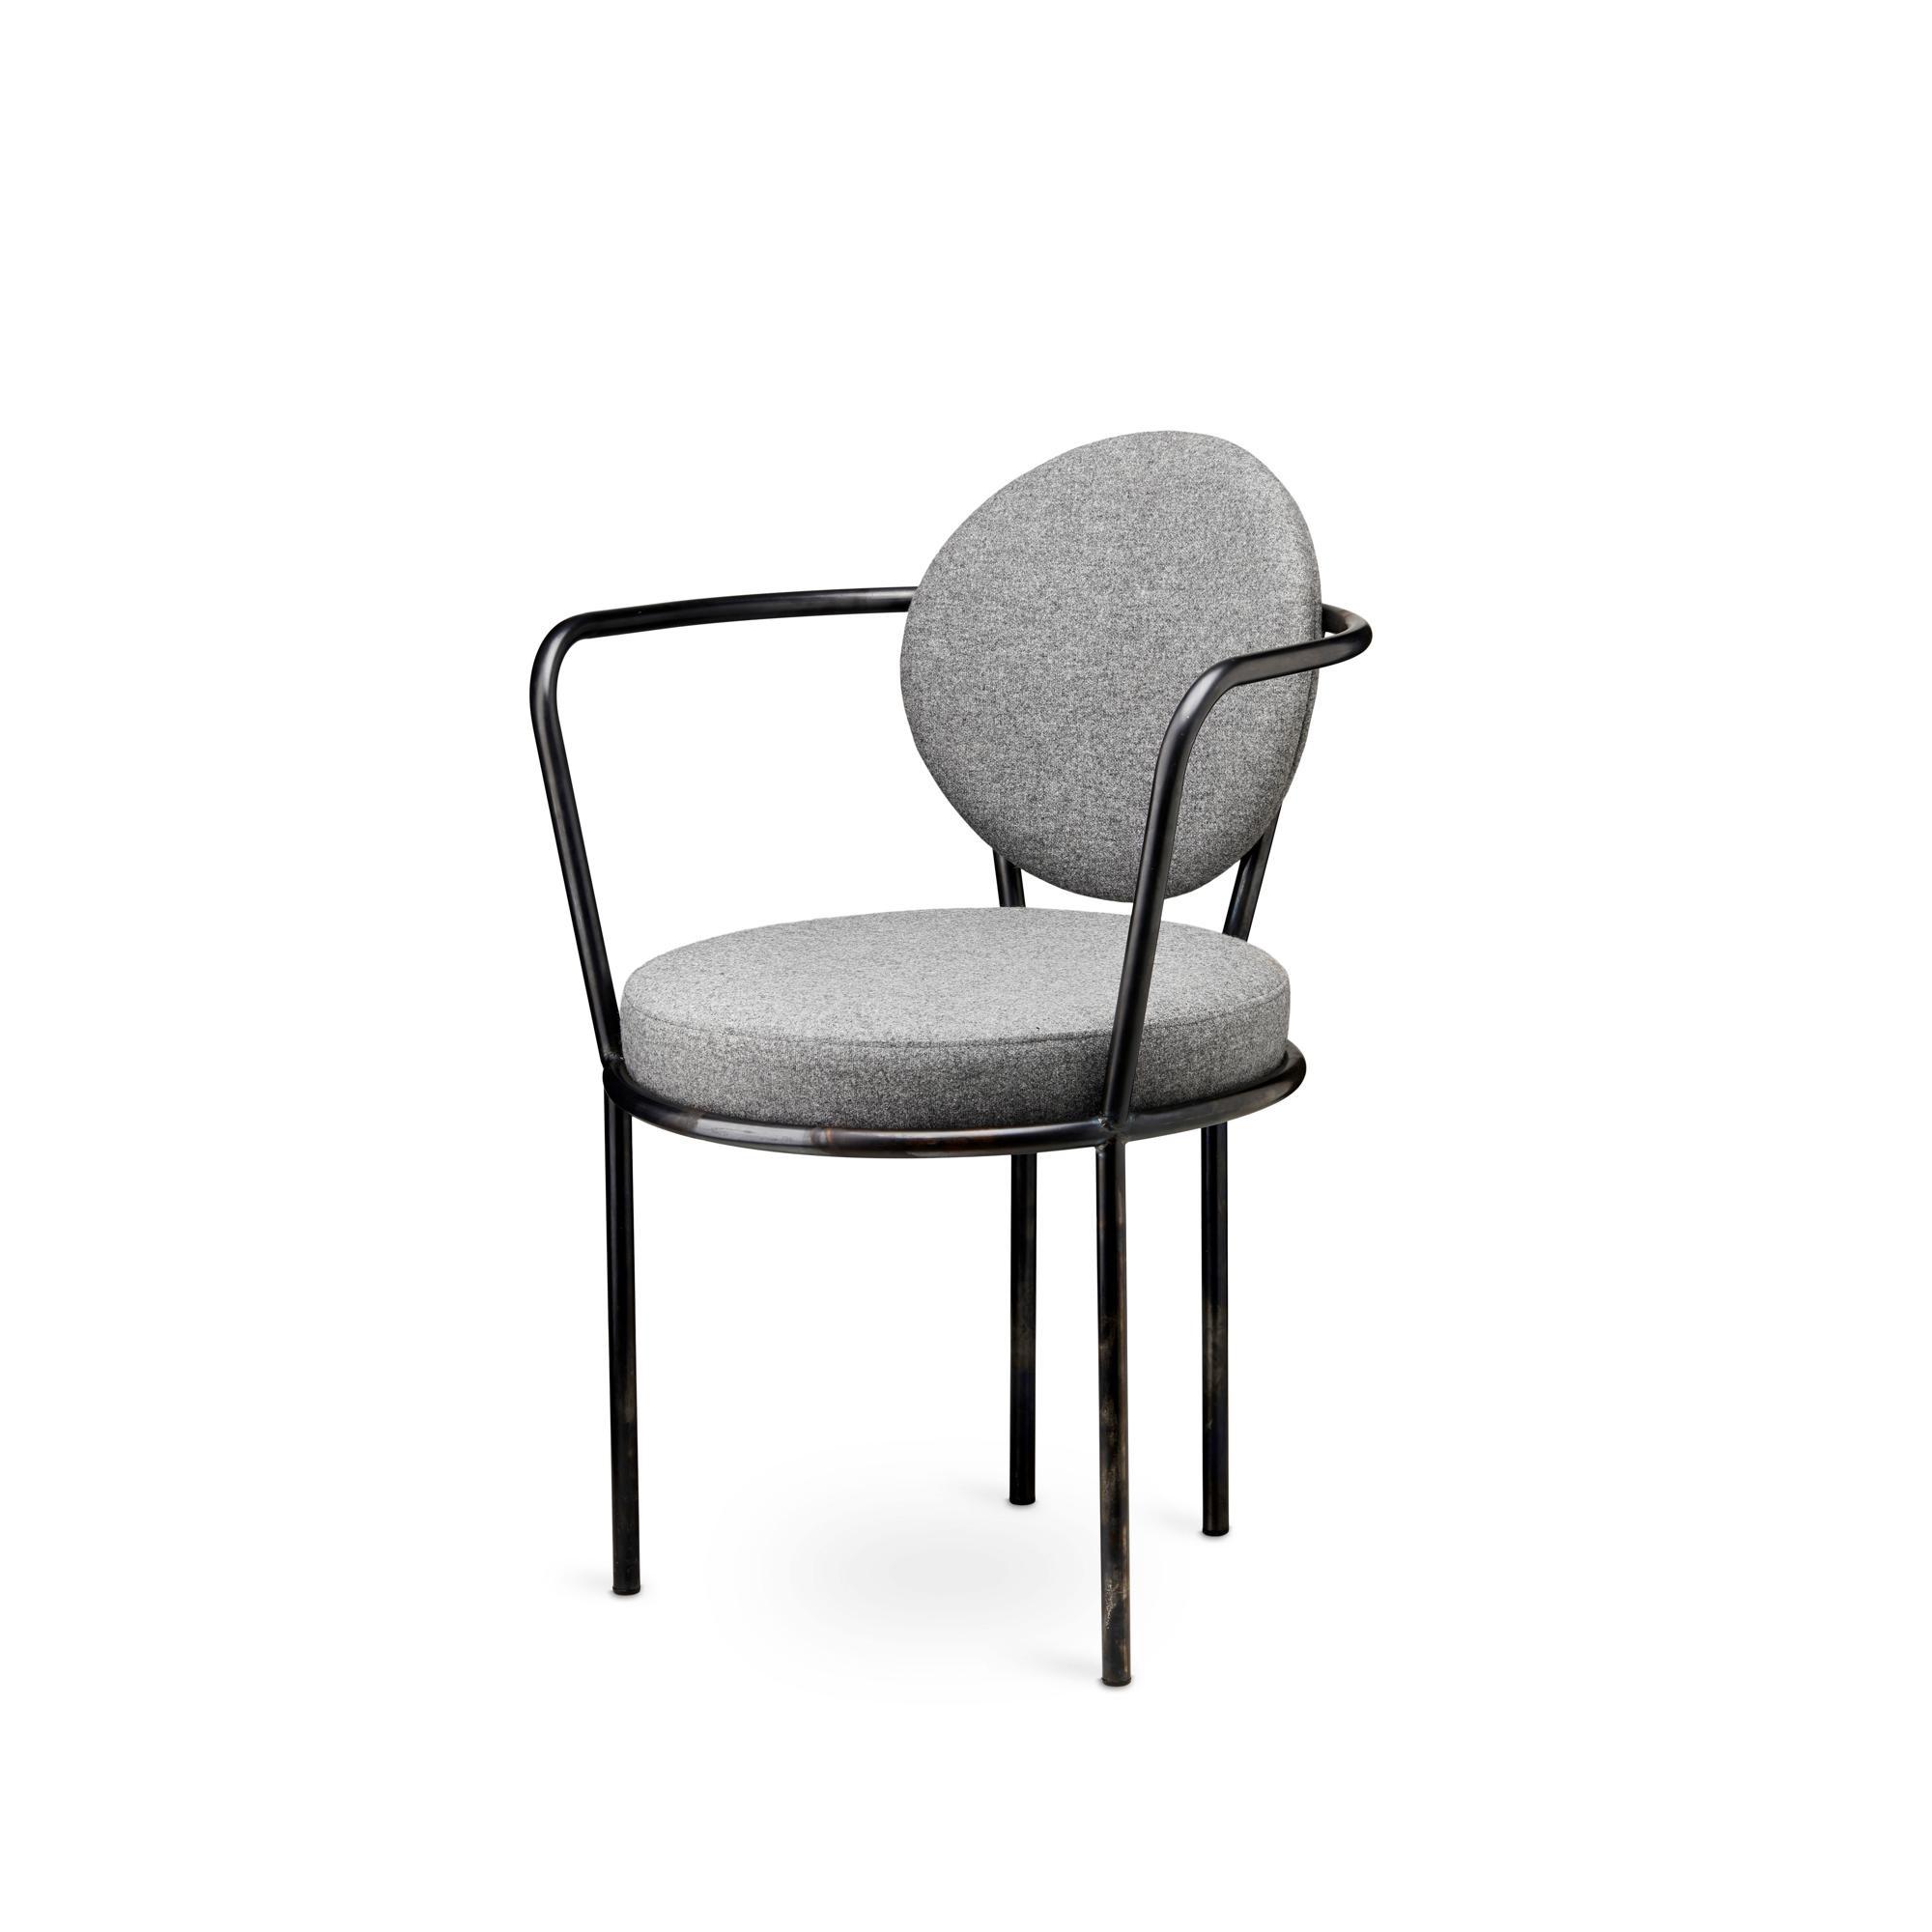 Design By Us Casablanca Spisebordsstol Metal/Grå Stone Køb